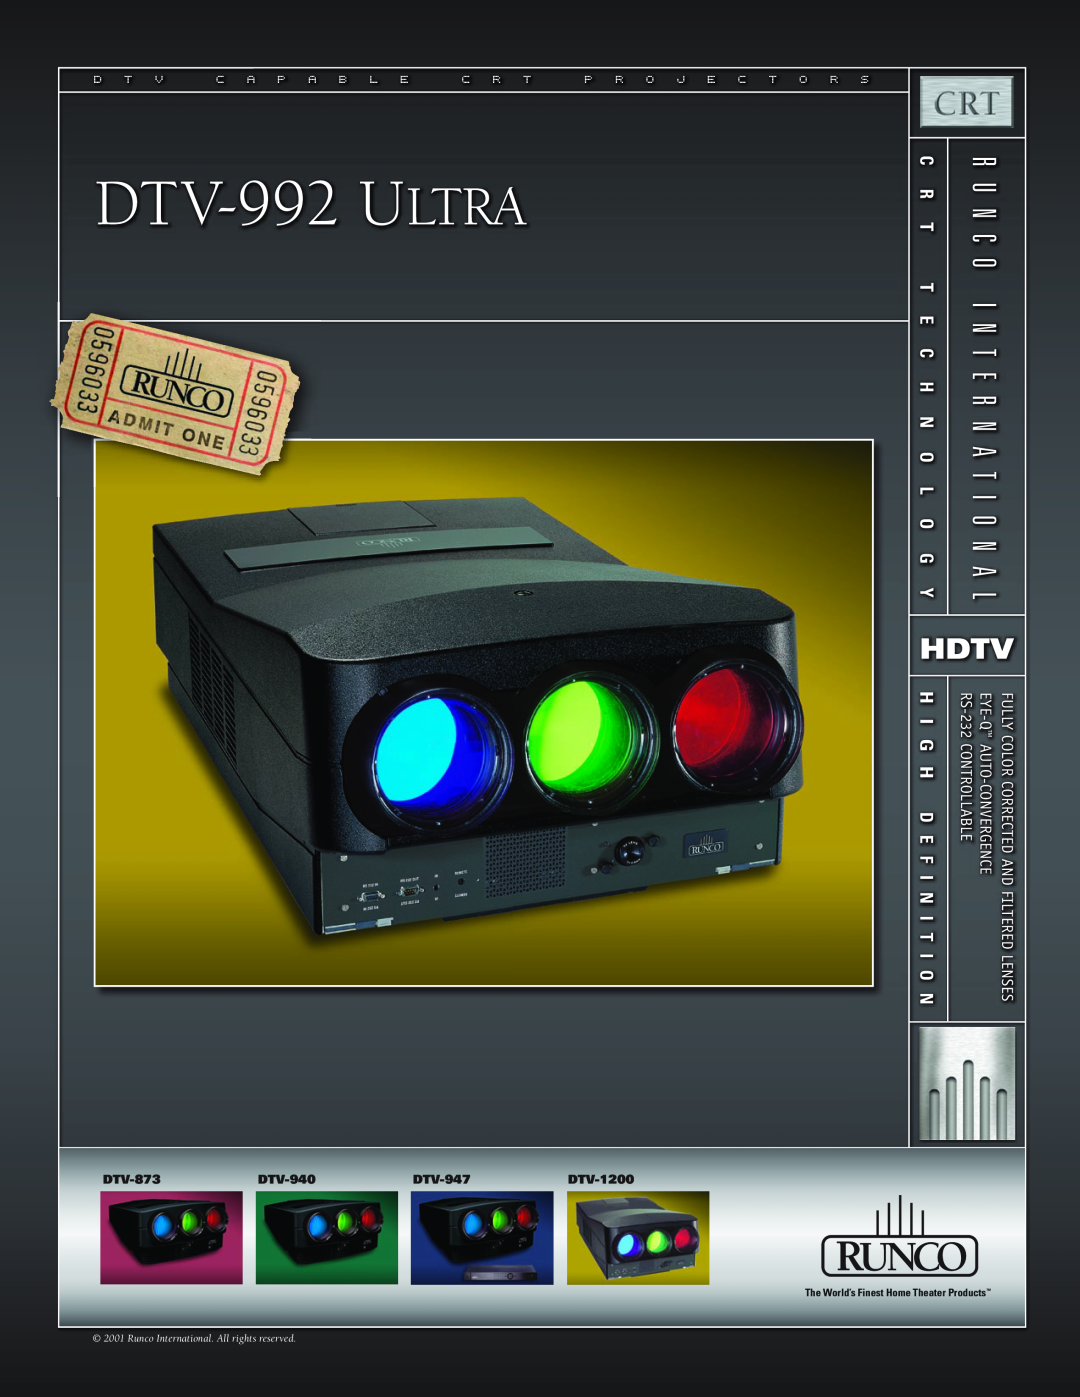 Runco DTV-992 ULTRA manual DT V-992 ULTRA, Hdtv, H I G H D E F, N I T, D T V C A P A B L E C R T P R O J E C T O R S, Lens 